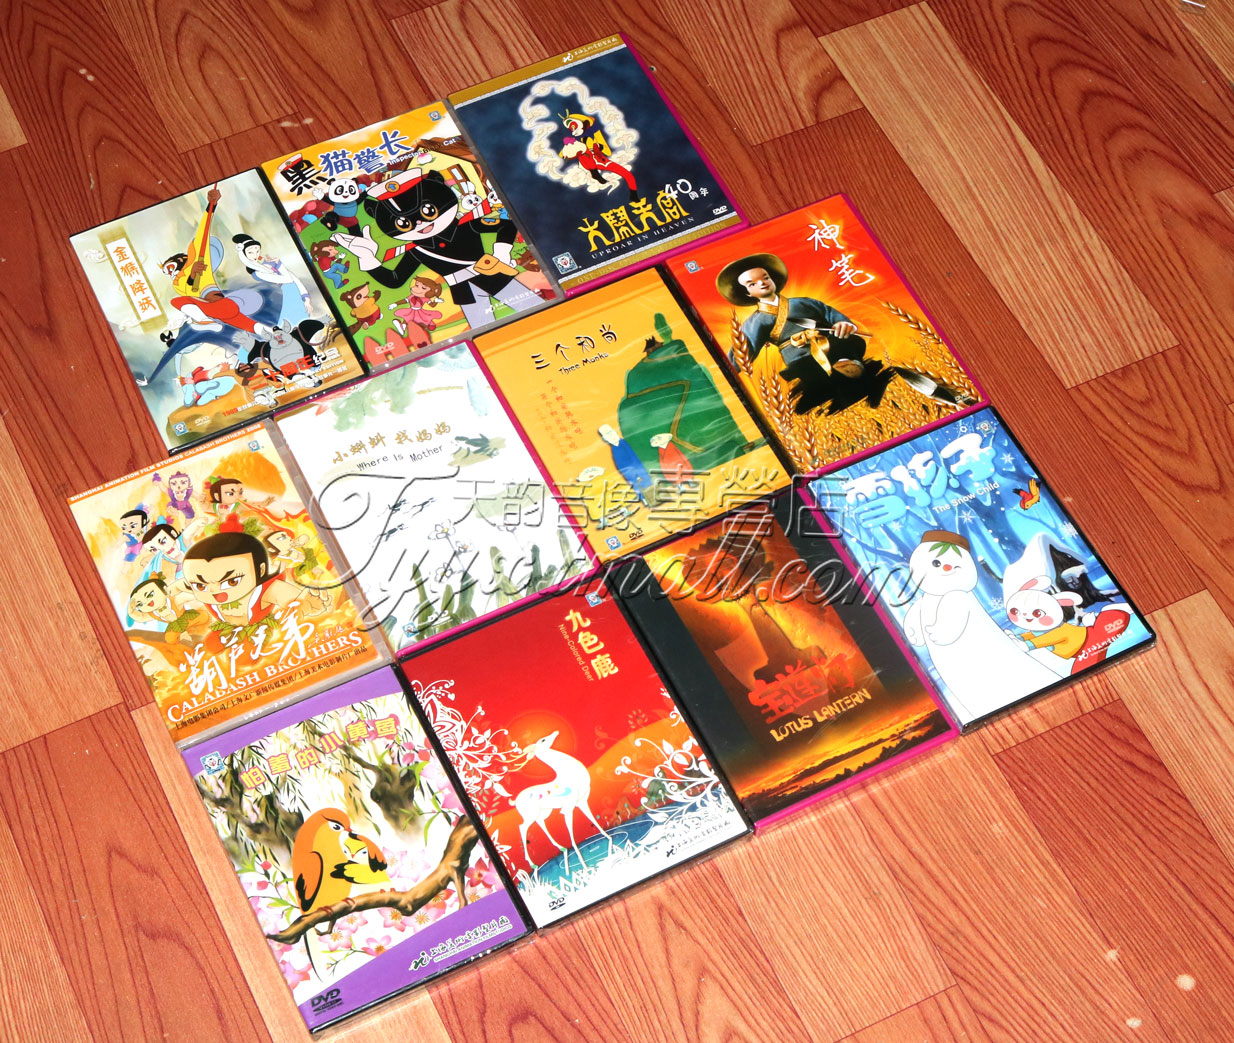 上海美术电影制片厂dvd卡通电影动画片11部DVD葫芦兄弟黑猫警长等